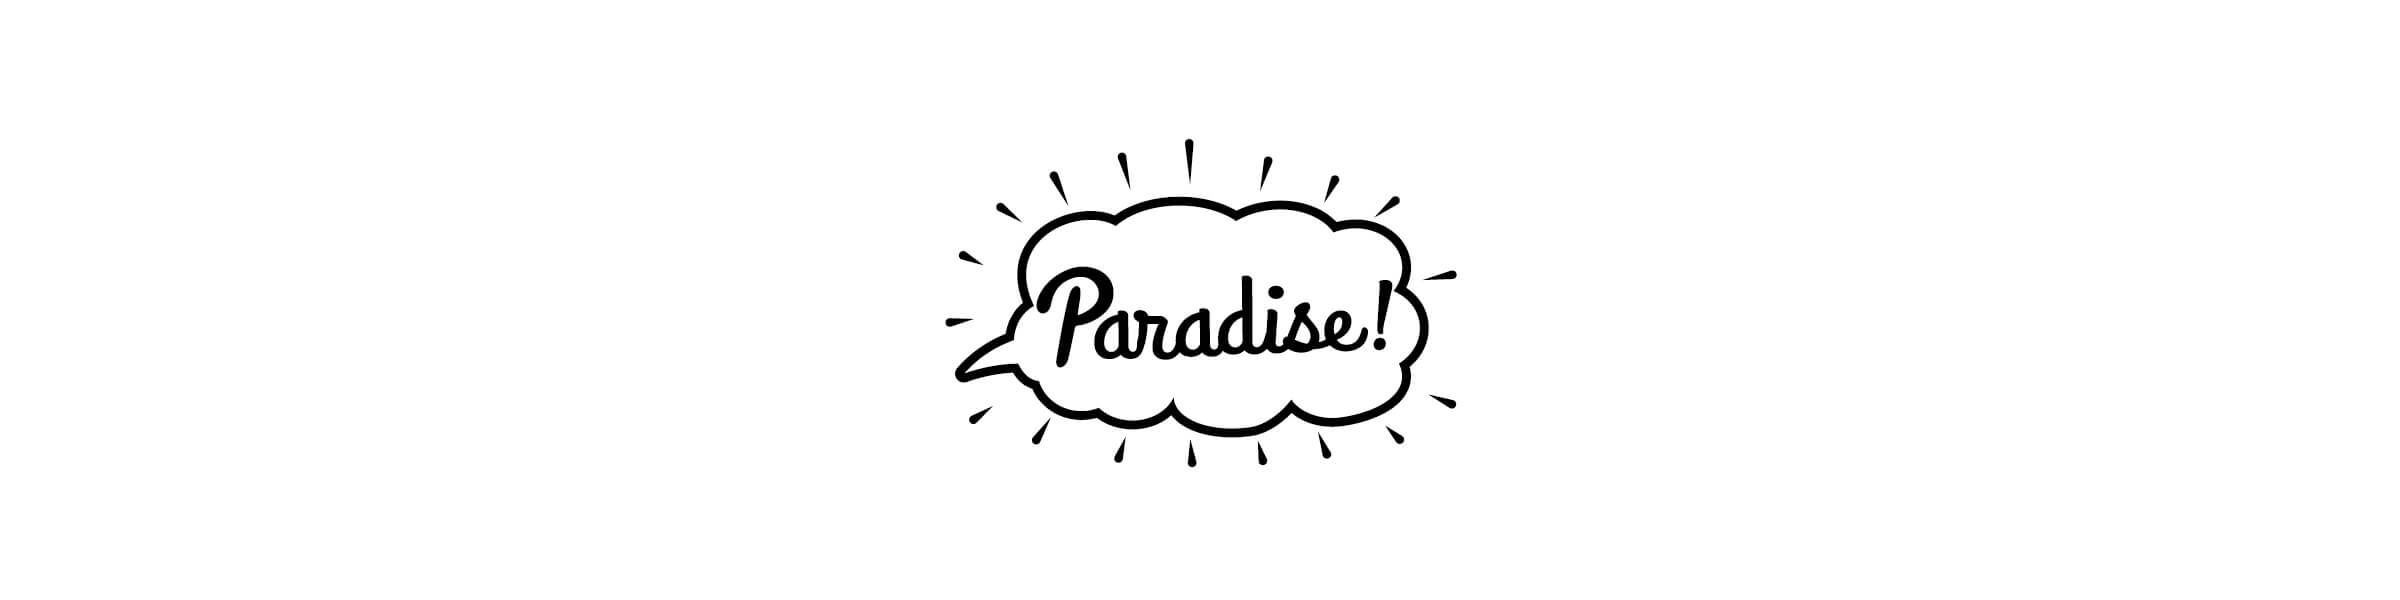 Paradise! / パラダイス